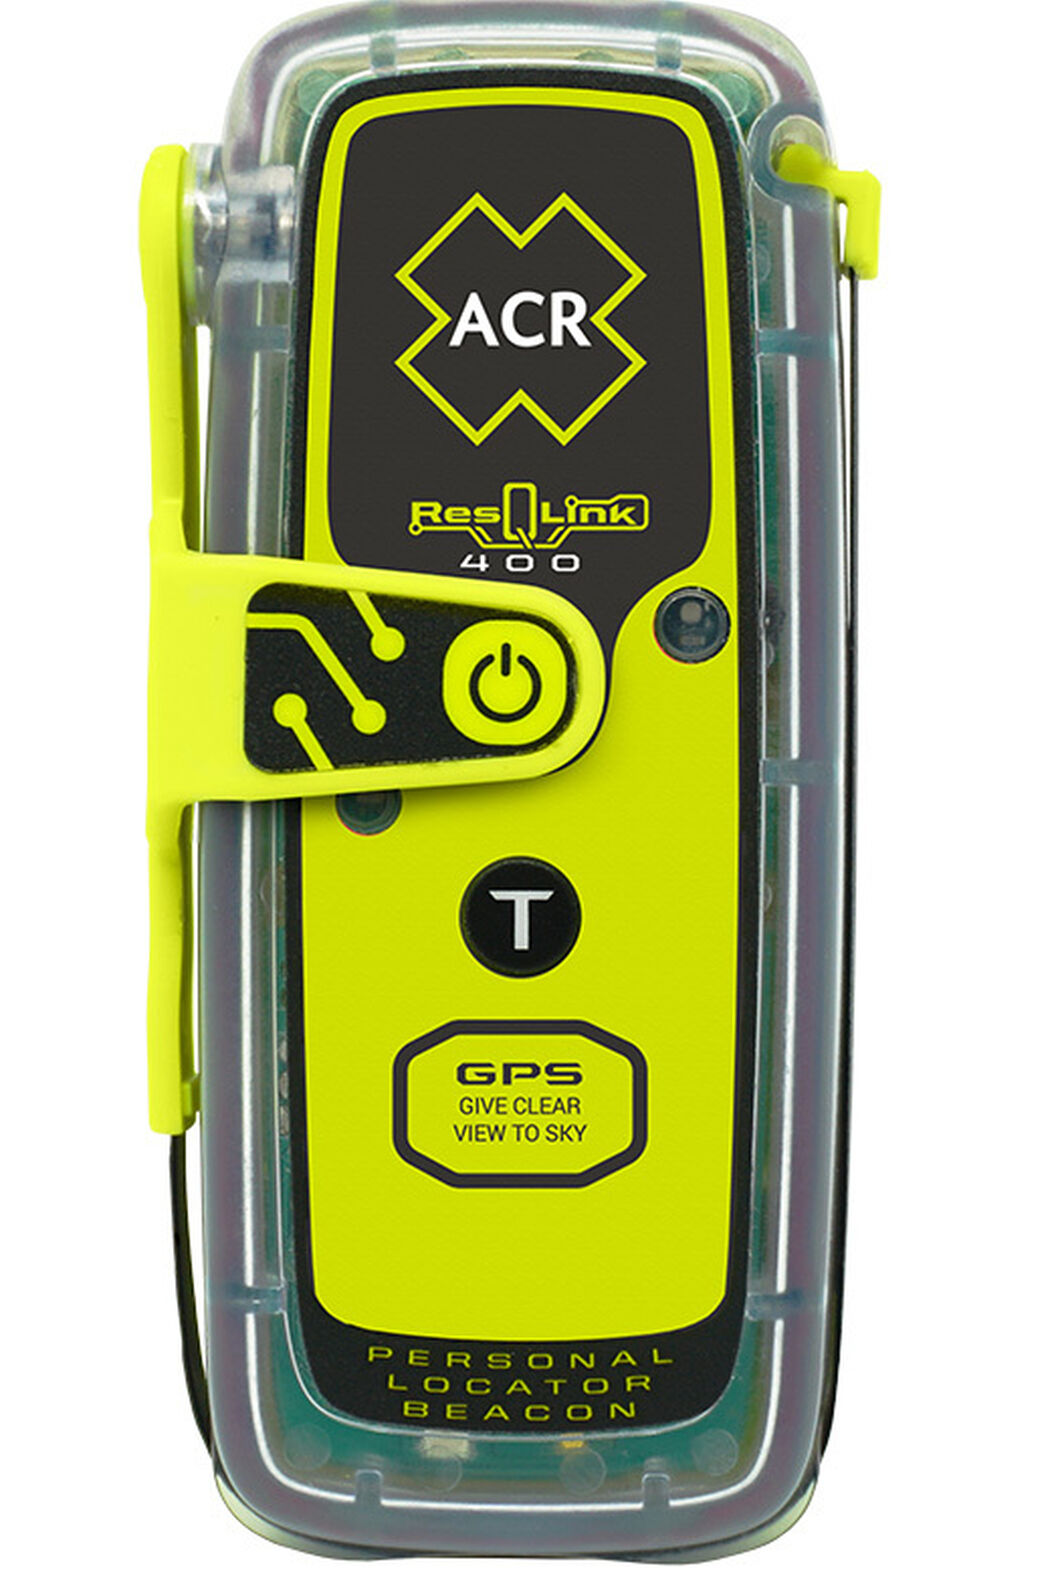 ACR ResQLink 400 Personal Locator Beacon GPS, None, hi-res